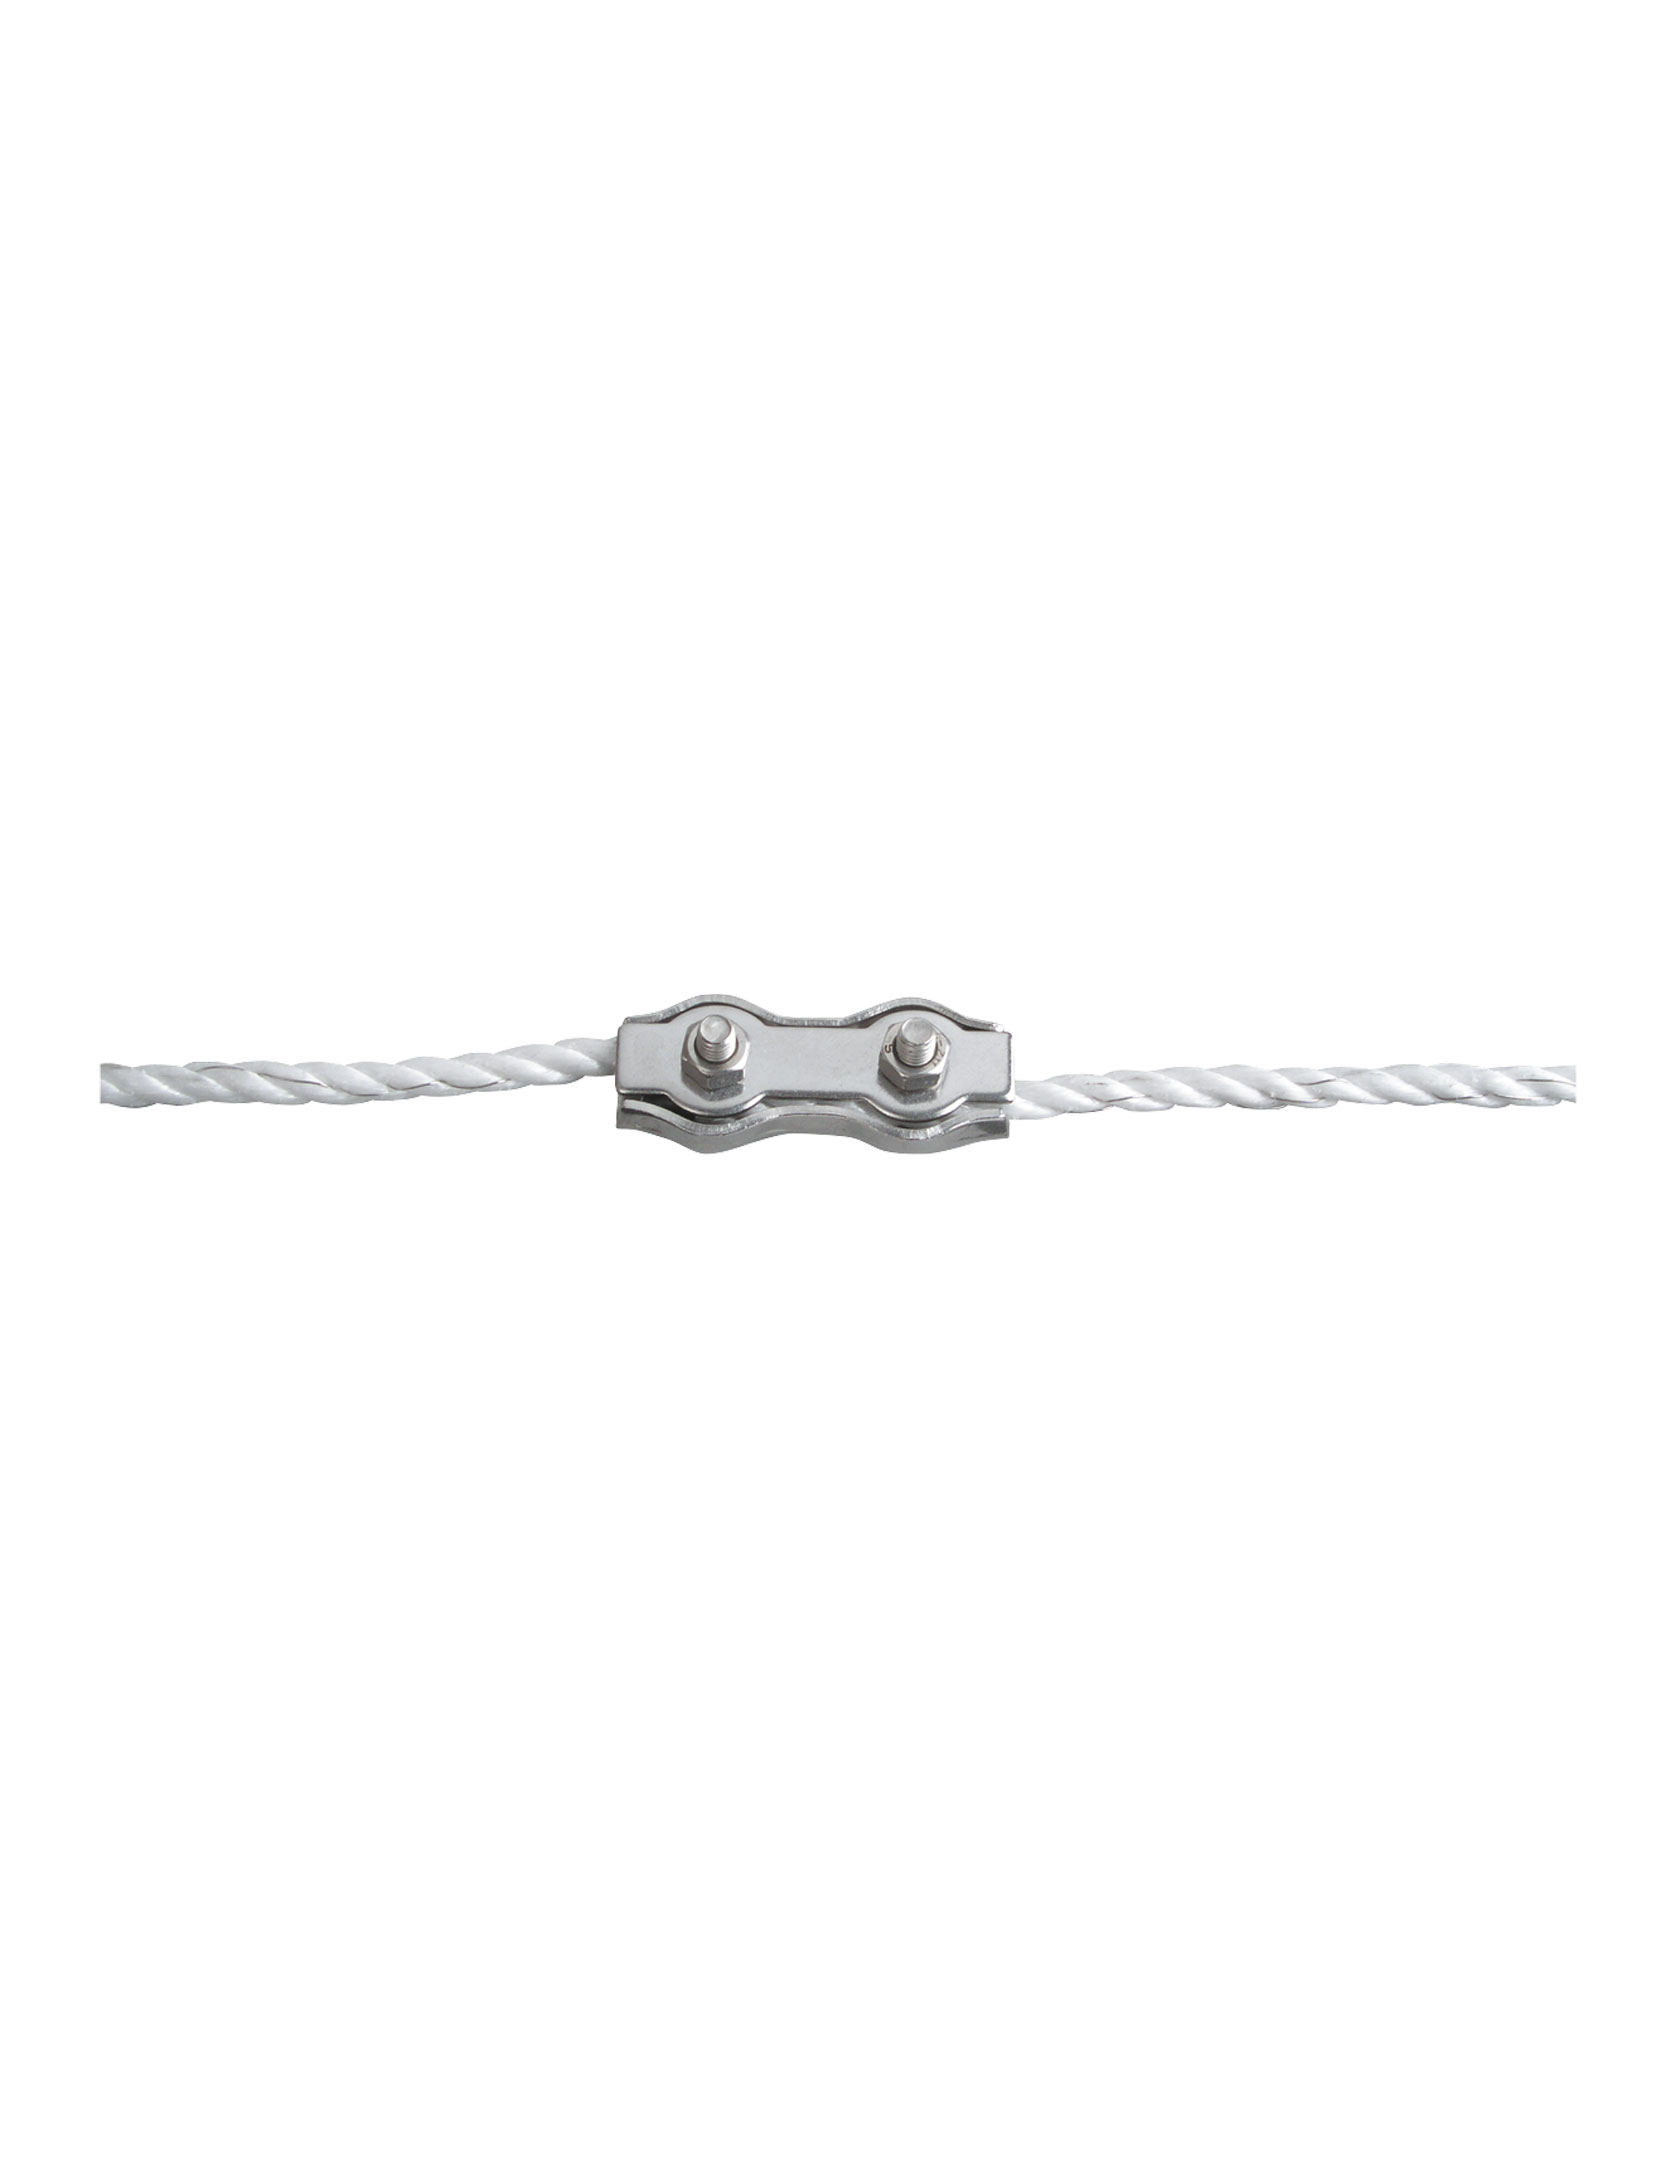 PATURA Seilverbinder Edelstahl für Seile bis 6 mm